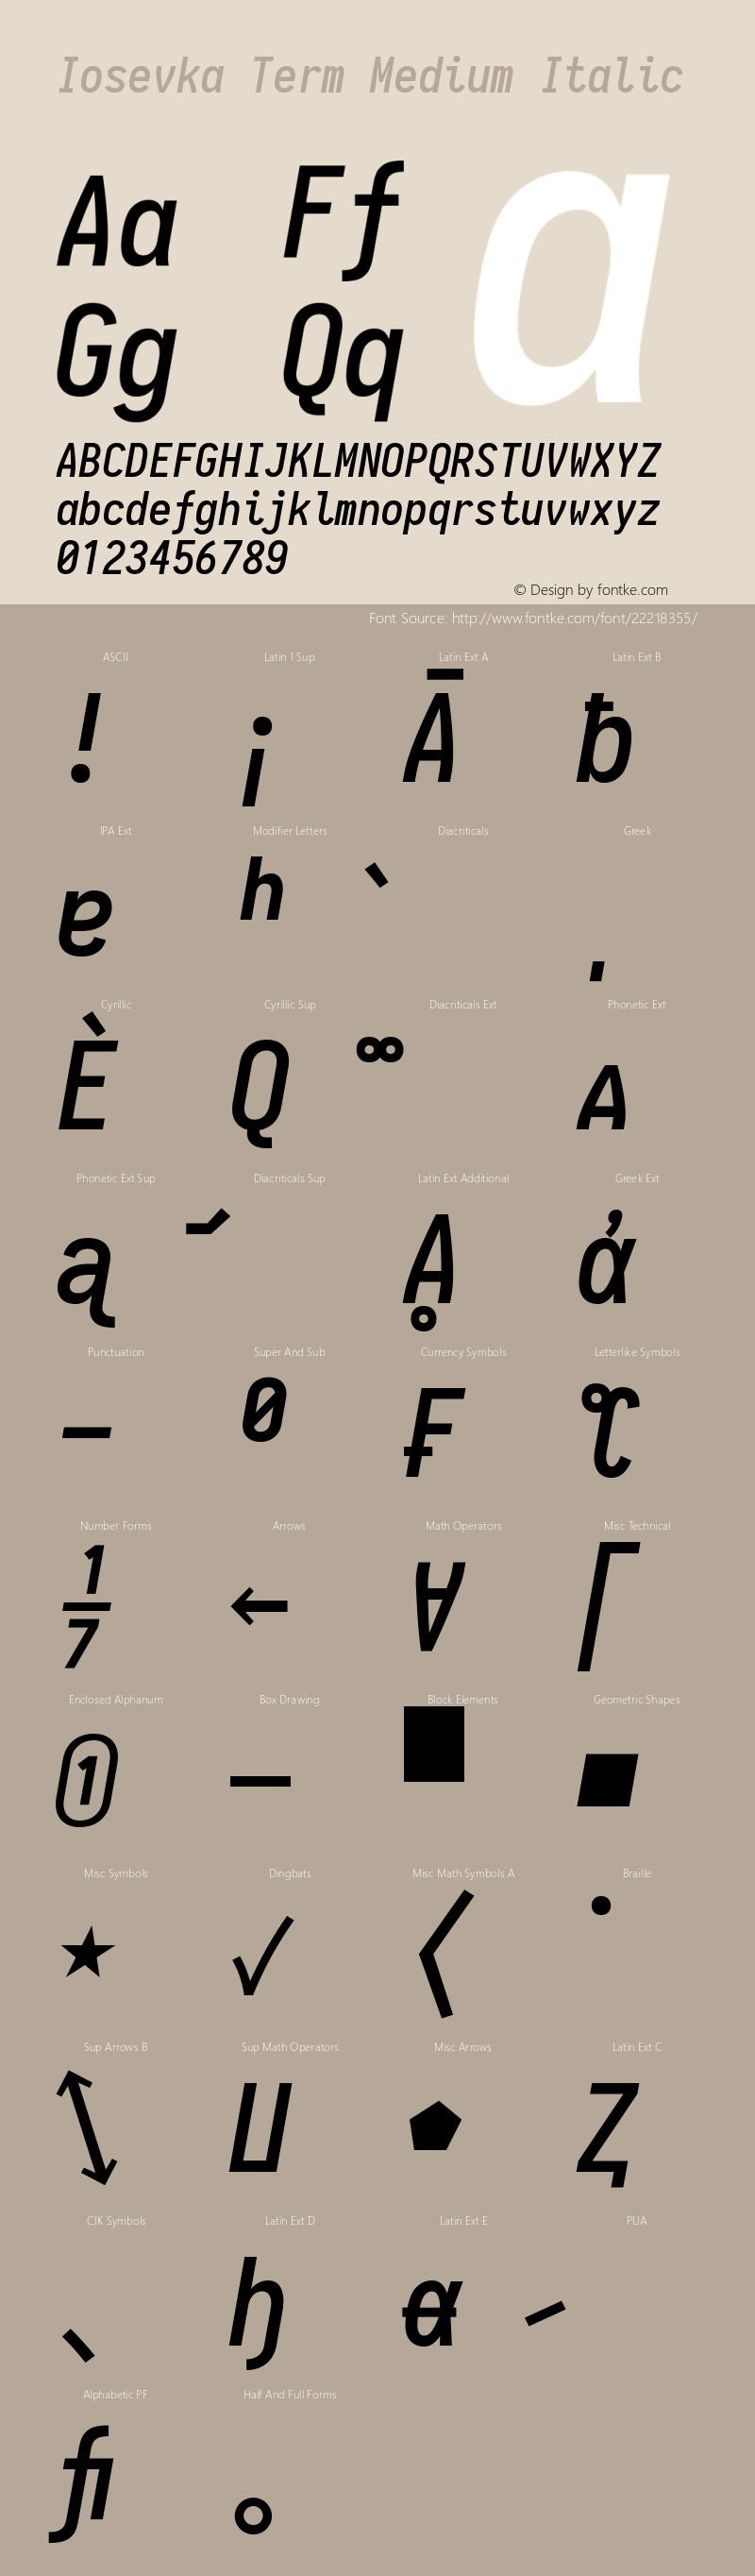 Iosevka Term Medium Italic 1.13.1; ttfautohint (v1.6)图片样张